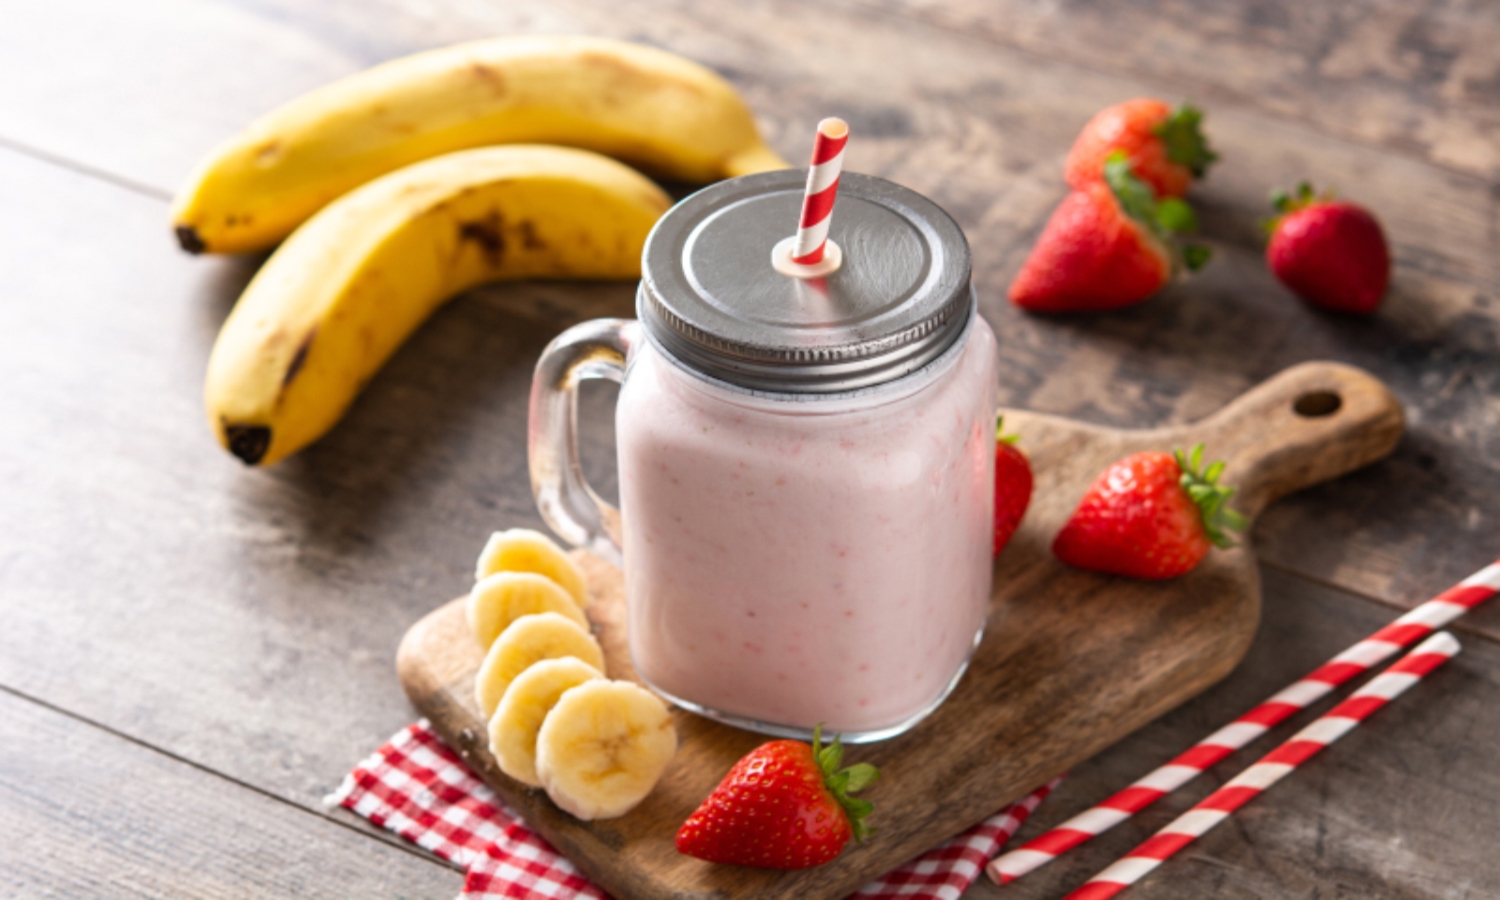 Owocowe smoothie w kubku, obok znajdują się składniki na smoothie: banany i truskawki.